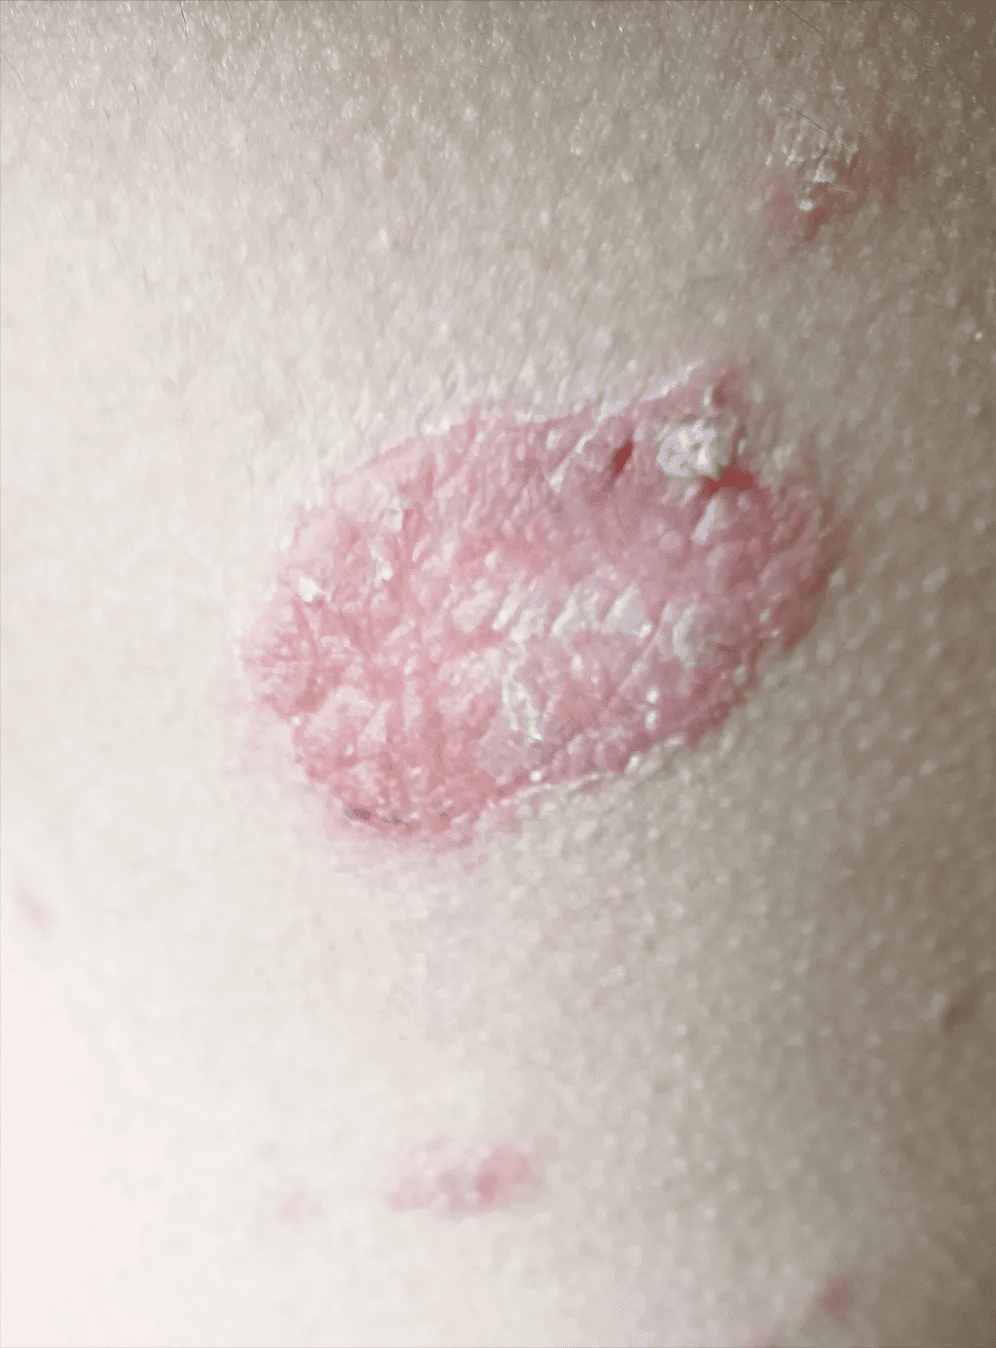 玫瑰糠疹早期症状图片